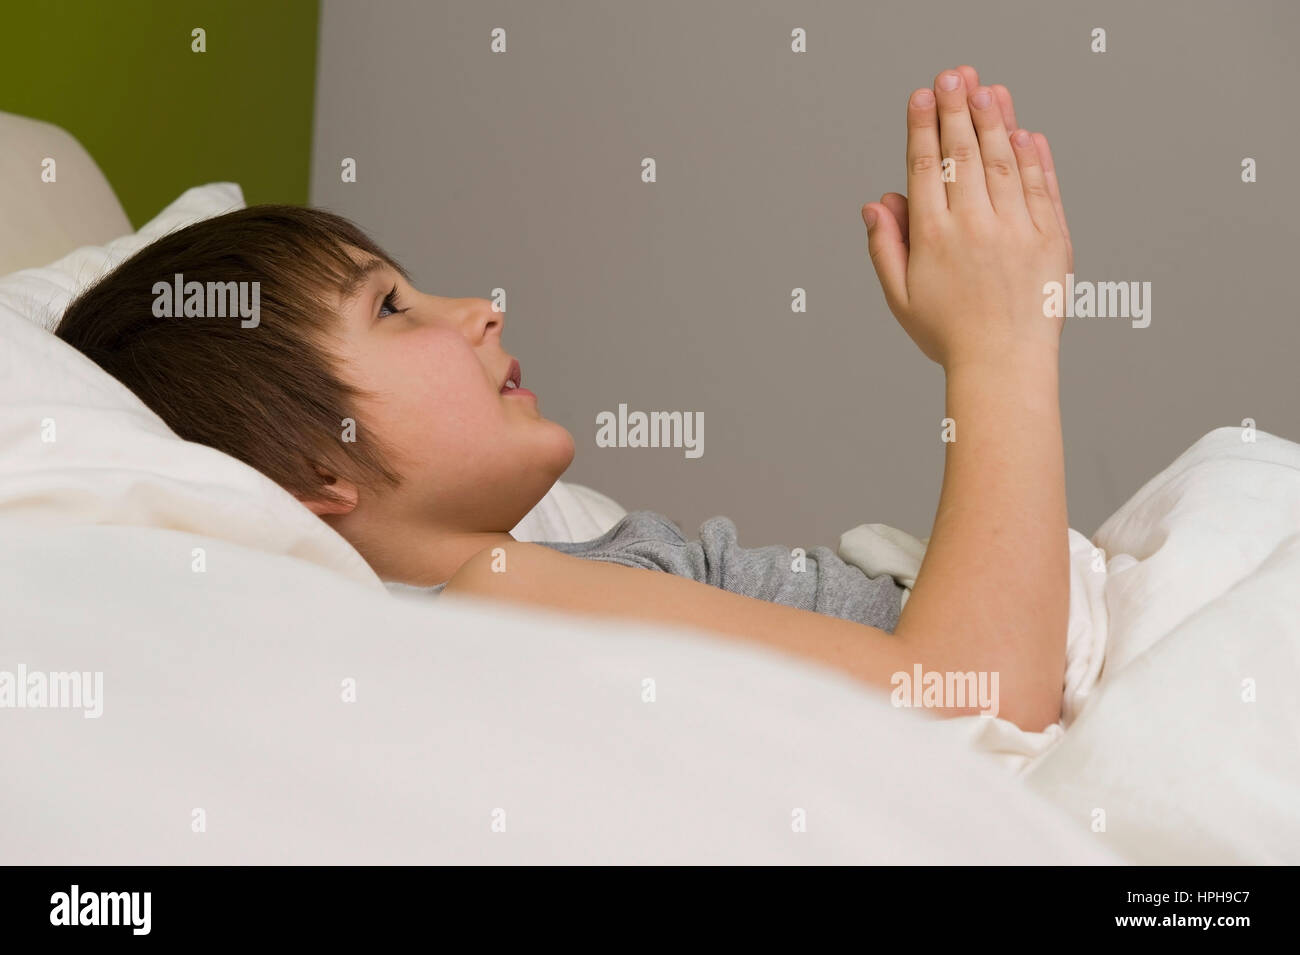 Junge betet vor dem Einschlafen im Bett - boy is praying in bed, Model released Stock Photo